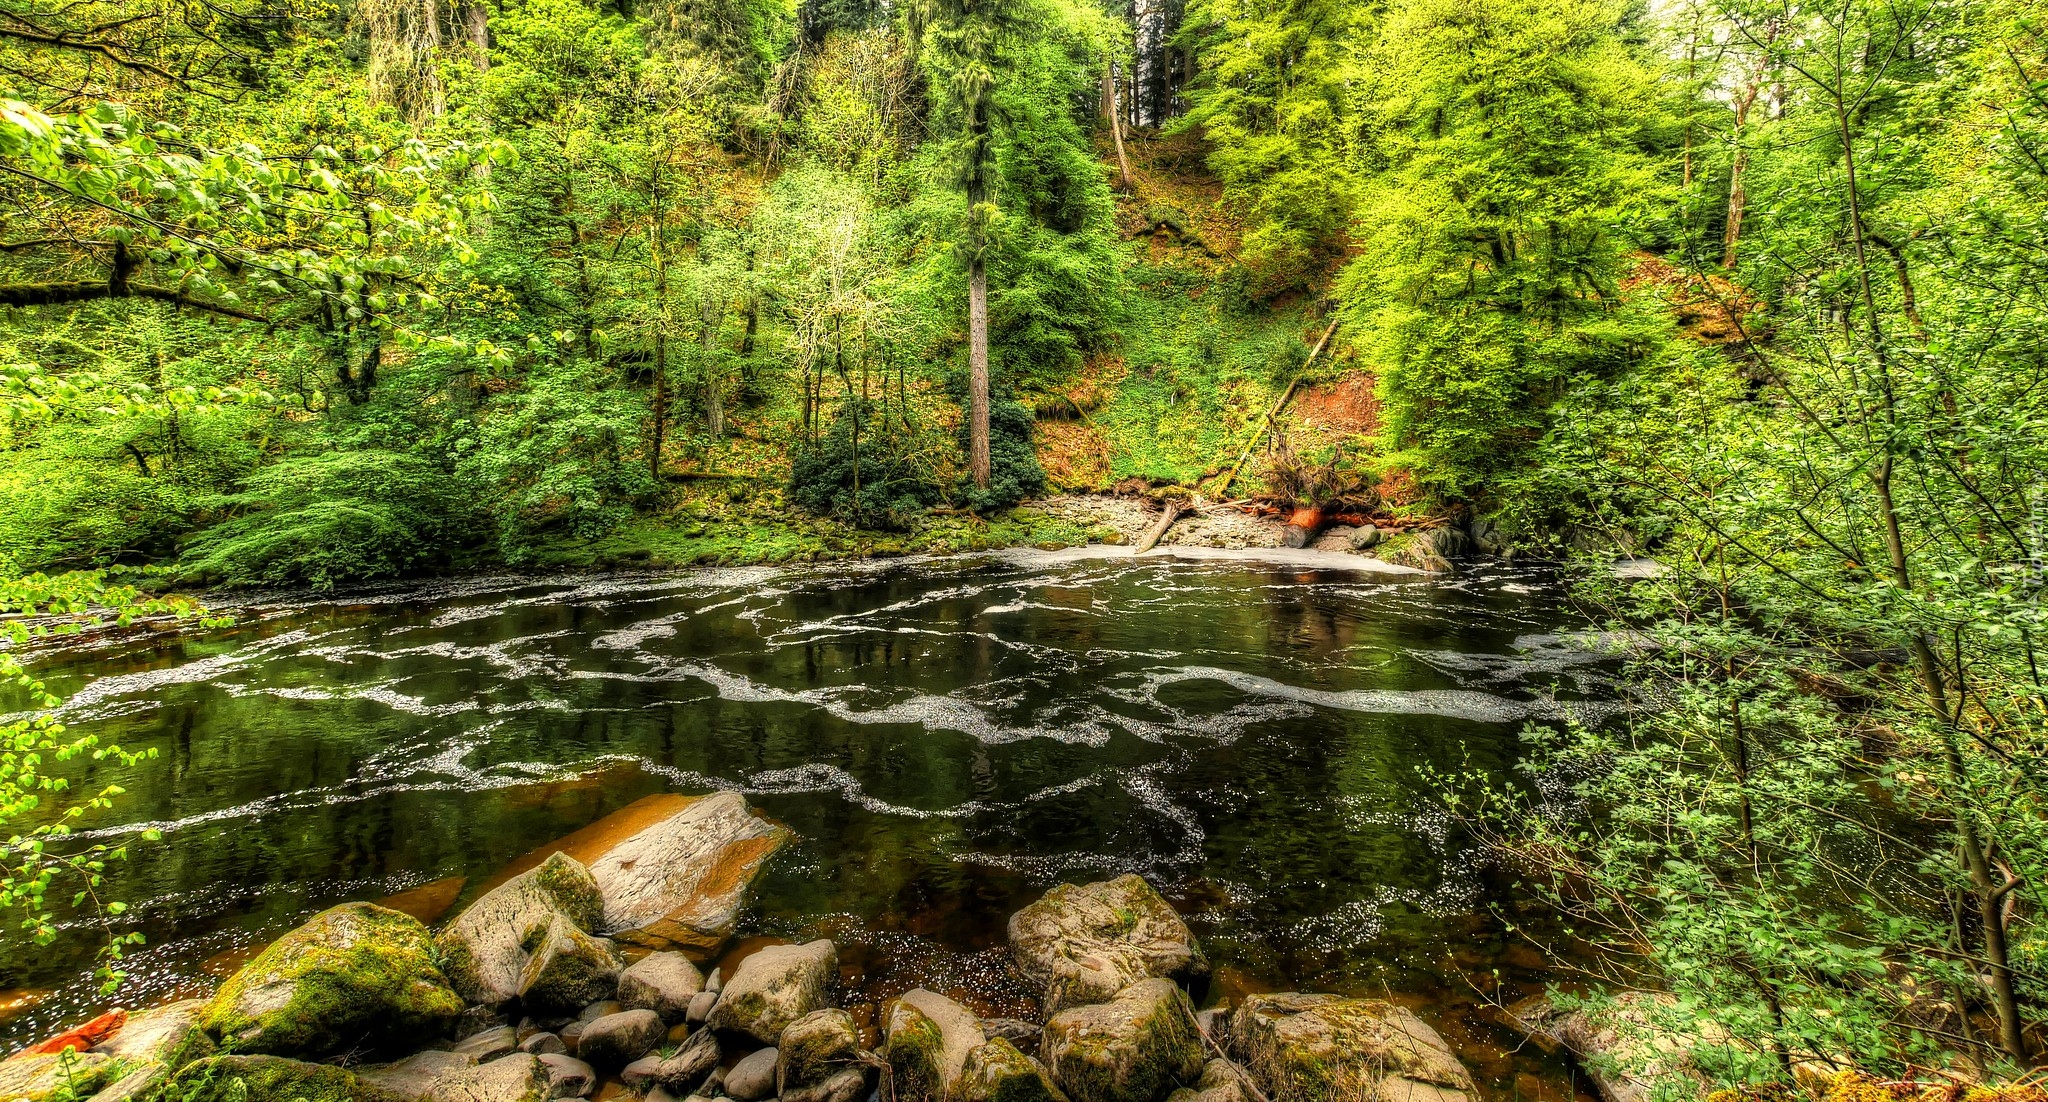 Las, Drzewa, Kamienie, Rzeka Braan, Szkocja